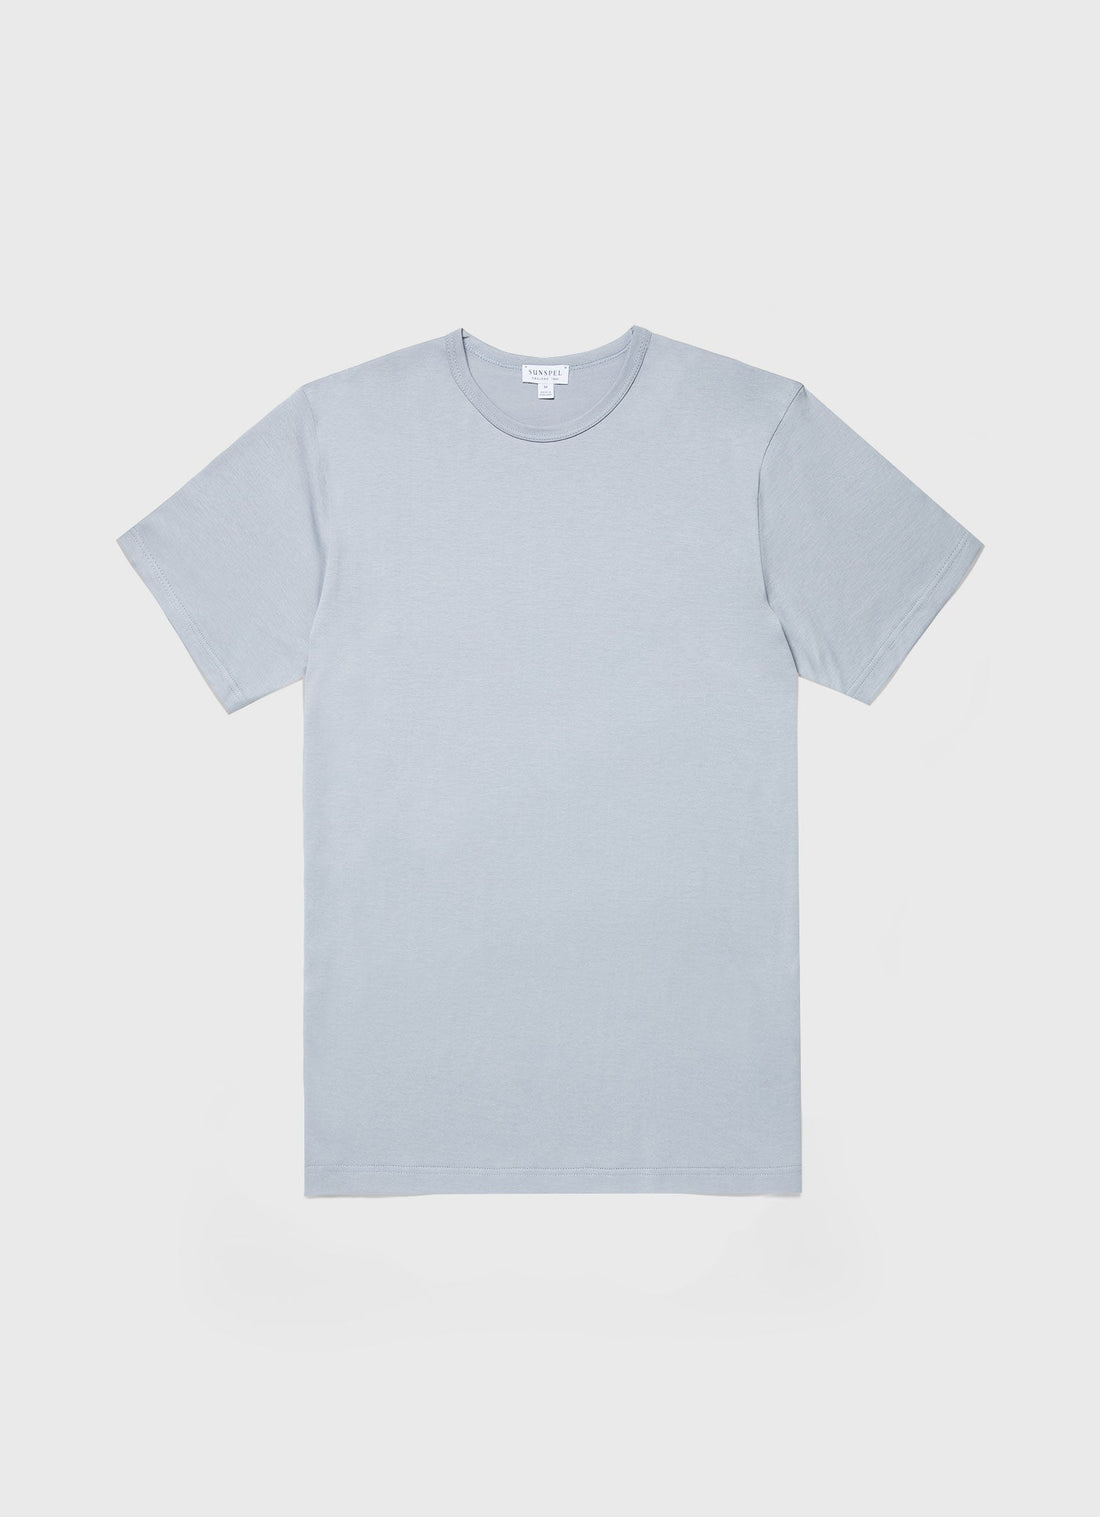 Men's Classic T-shirt in Smoke Blue